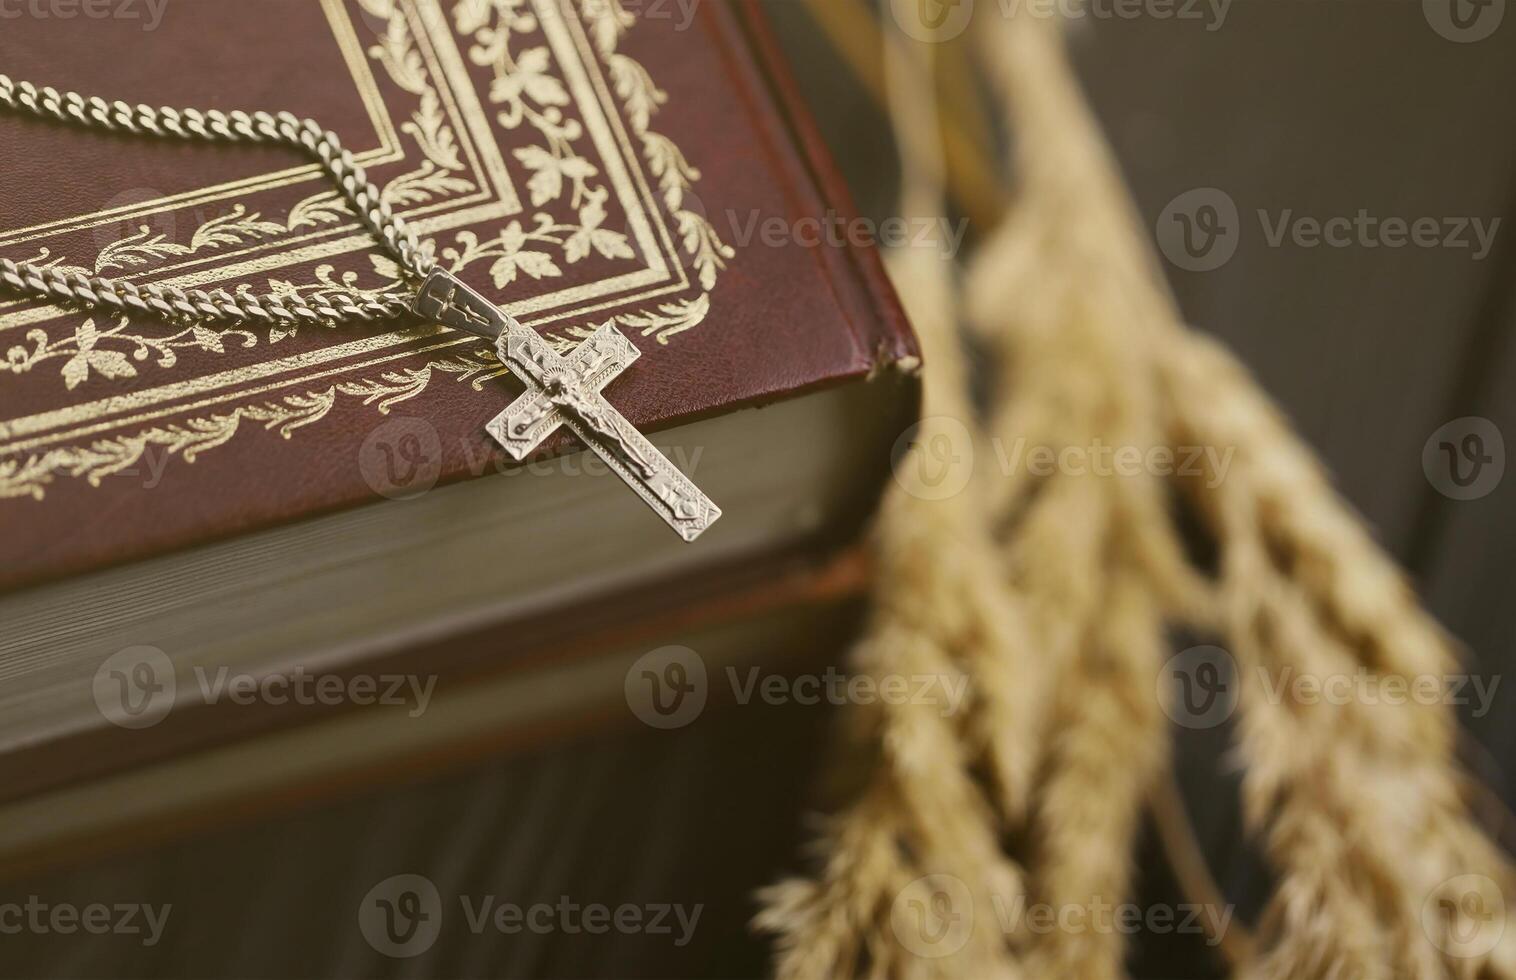 colar de prata com cruz crucifixo no livro da bíblia sagrada cristão na mesa de madeira preta. pedindo bênçãos de Deus com o poder da santidade foto